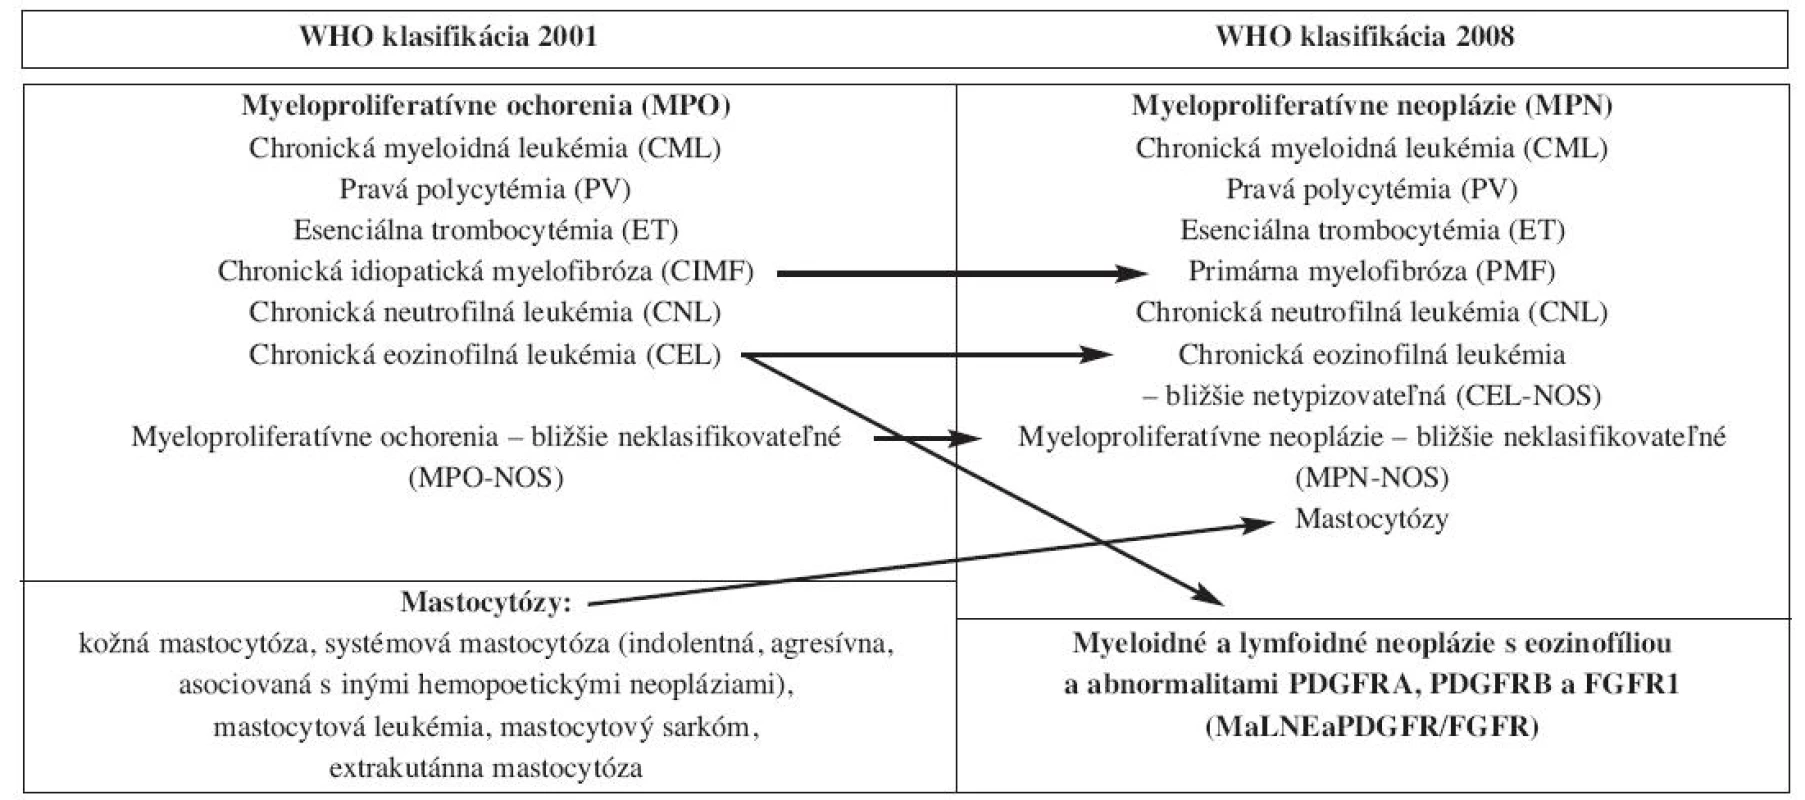 Zmeny v klasifikácii a nomenklatúre MPO podľa WHO klasifikácie 2008.